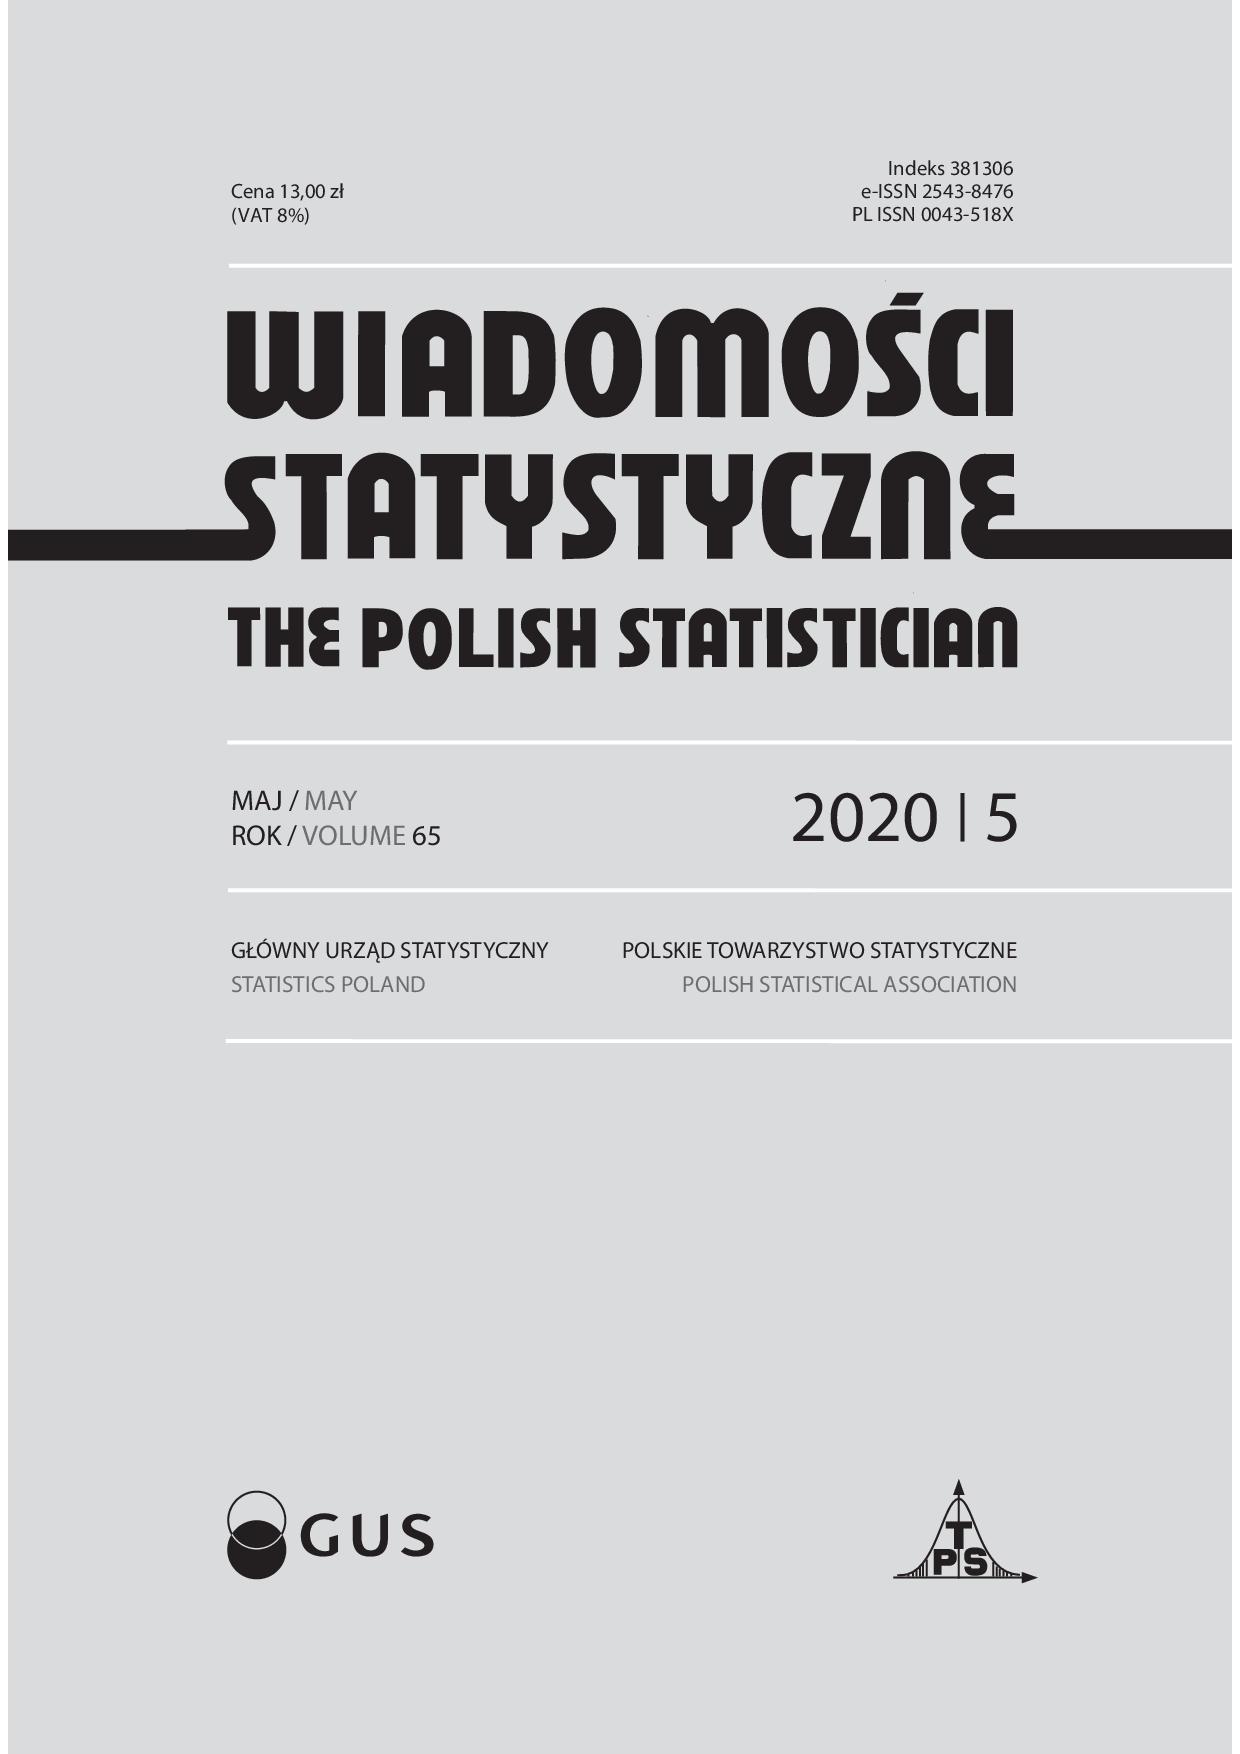 Recenzja książki "Statystyka z prostej perspektywy teorii zbiorów" pod redakcją Tadeusza Borysa i Marty Kusterki-Jefmańskiej